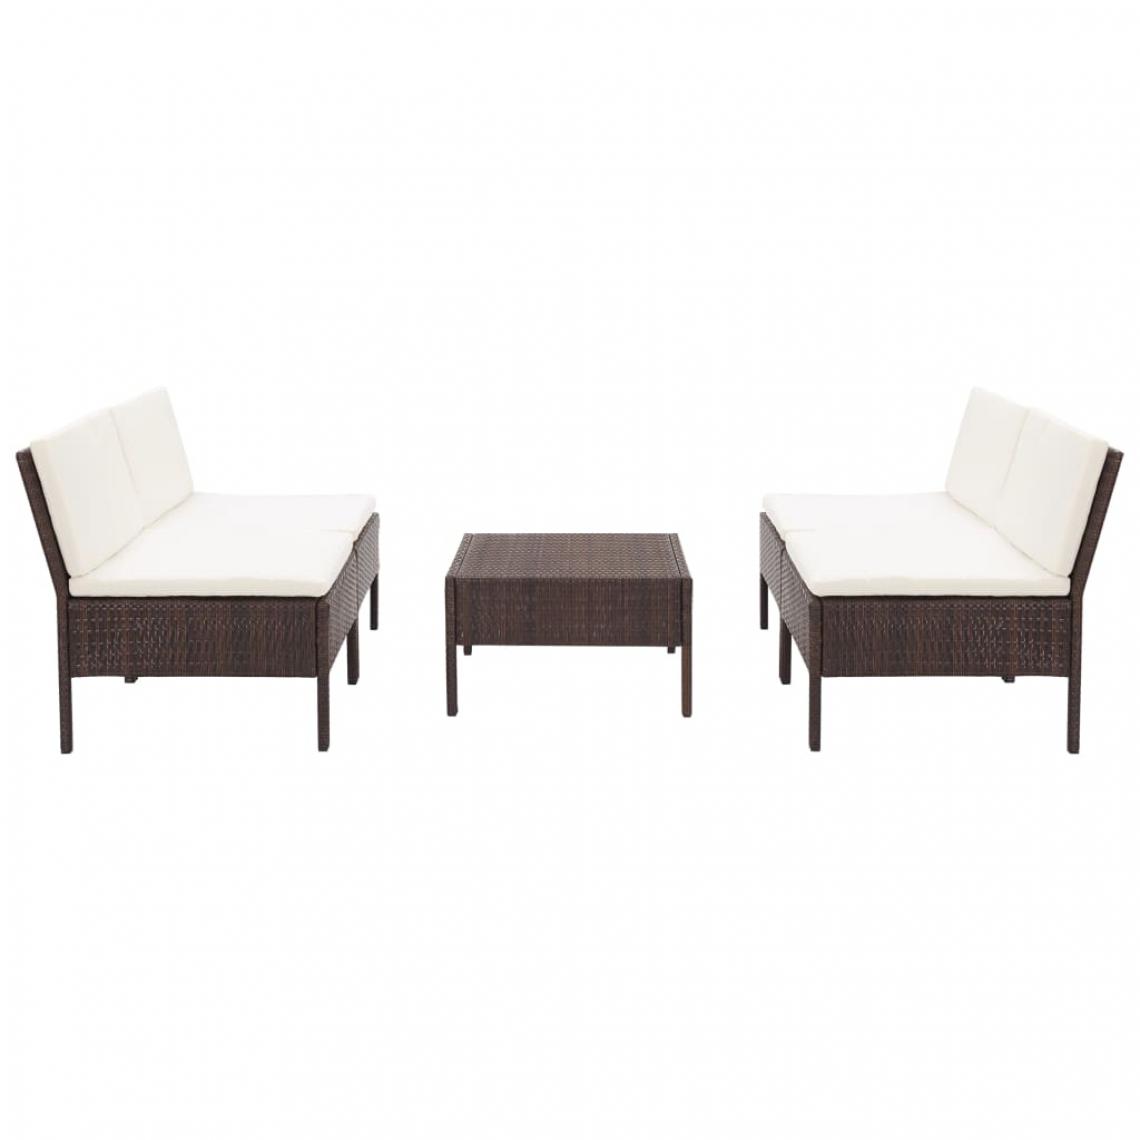 Chunhelife - Tables et chaises Salon de jardin 5 pcs avec coussins Résine tressée Marron - Ensembles tables et chaises